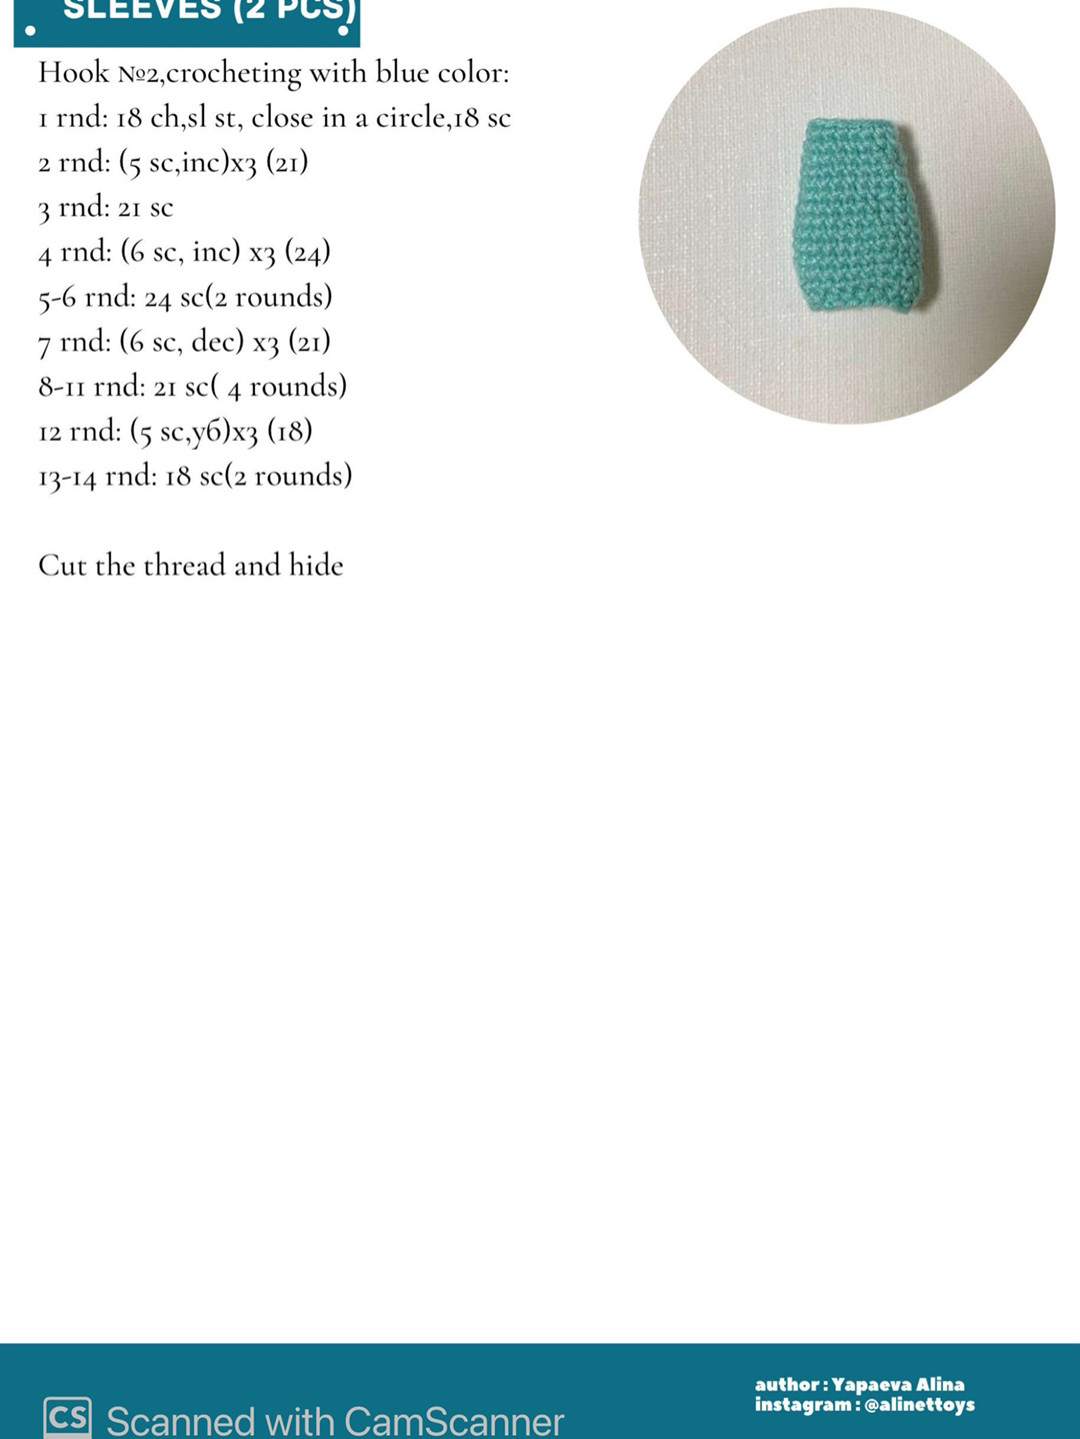 crochet pattern doll suzie